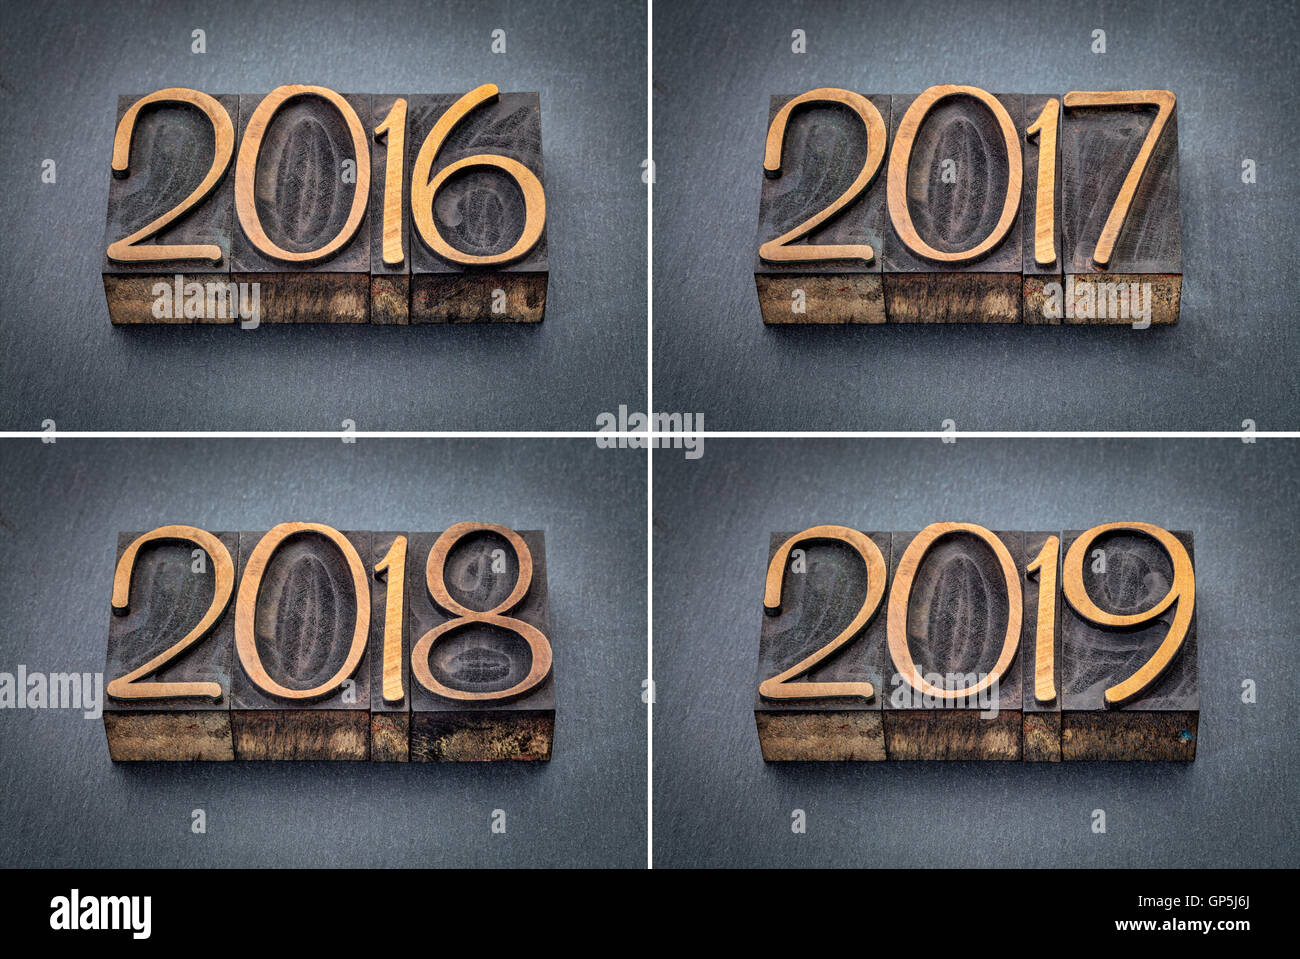 Année 2016, 2017, 2018 et 2019 set - texte en typo bois type contre l'ardoise gris Banque D'Images